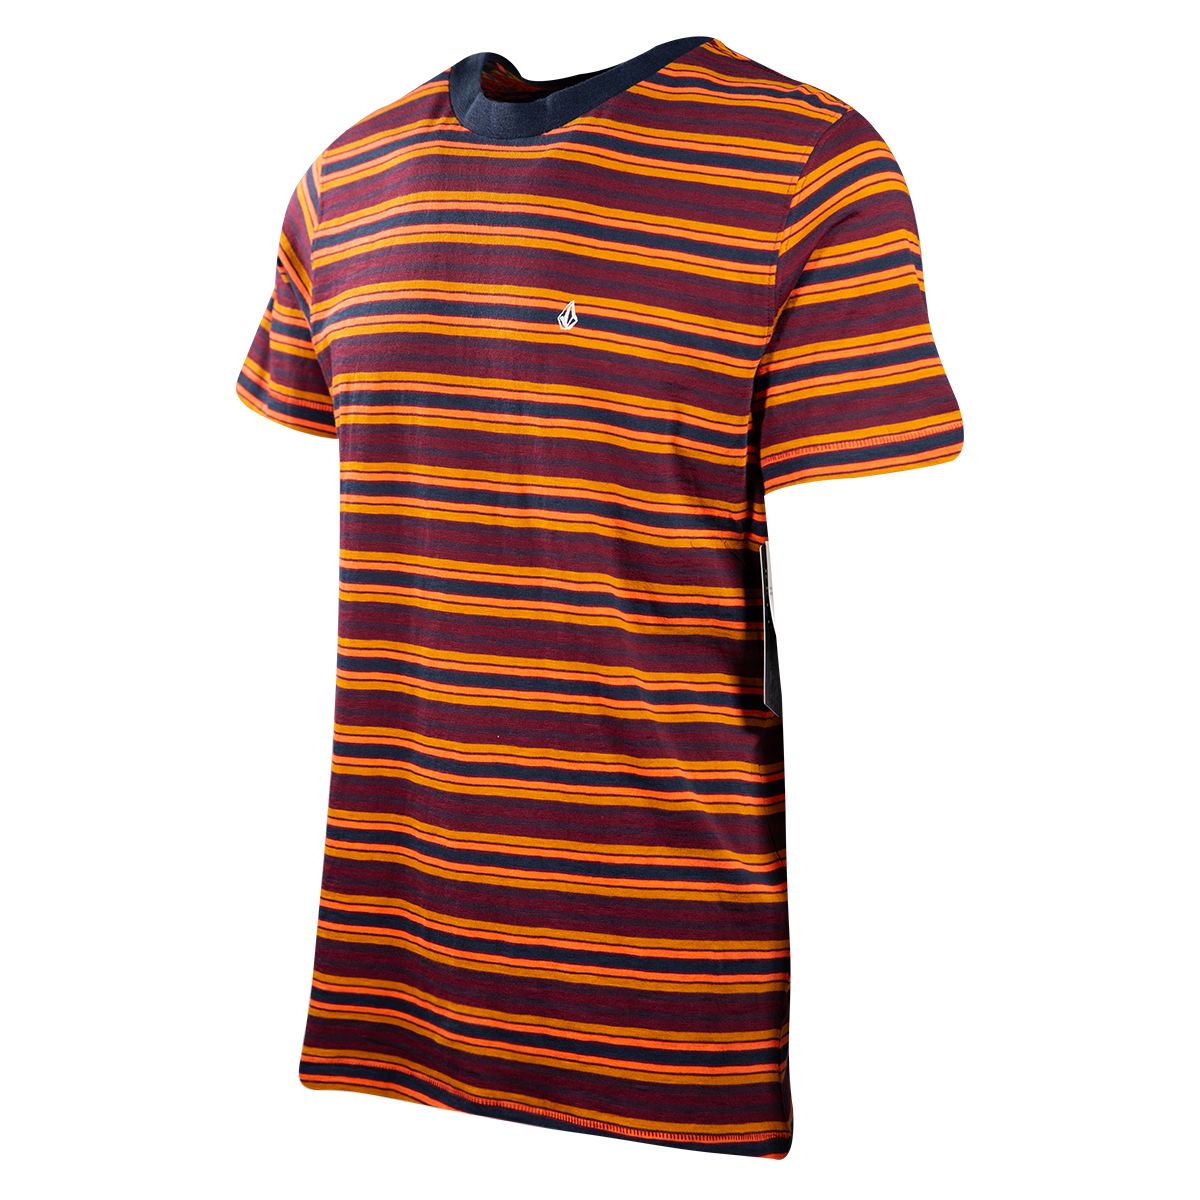 Volcom Men's Maroon Orange Navy Gold Striped Moorley S/S T-Shirt (S13)